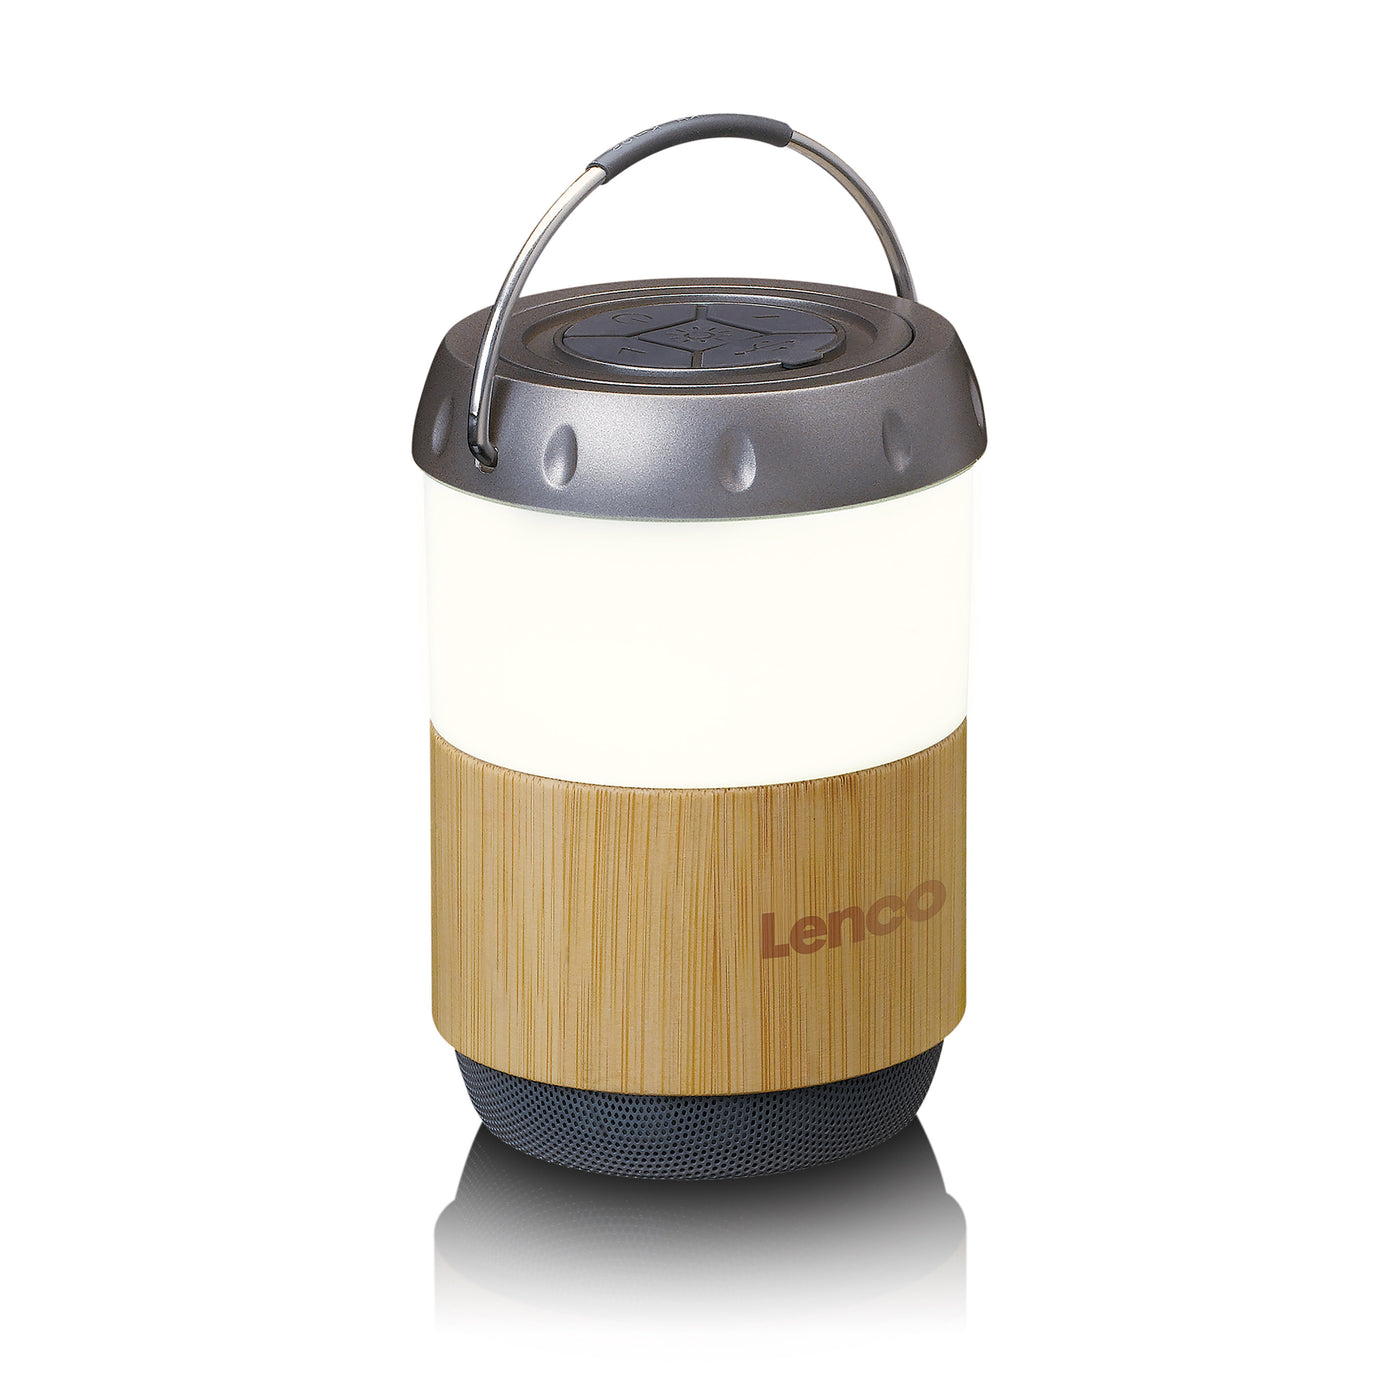 LENCO BTL-030BA - Lantaarn met ingebouwde Bluetooth® speaker - Bamboo